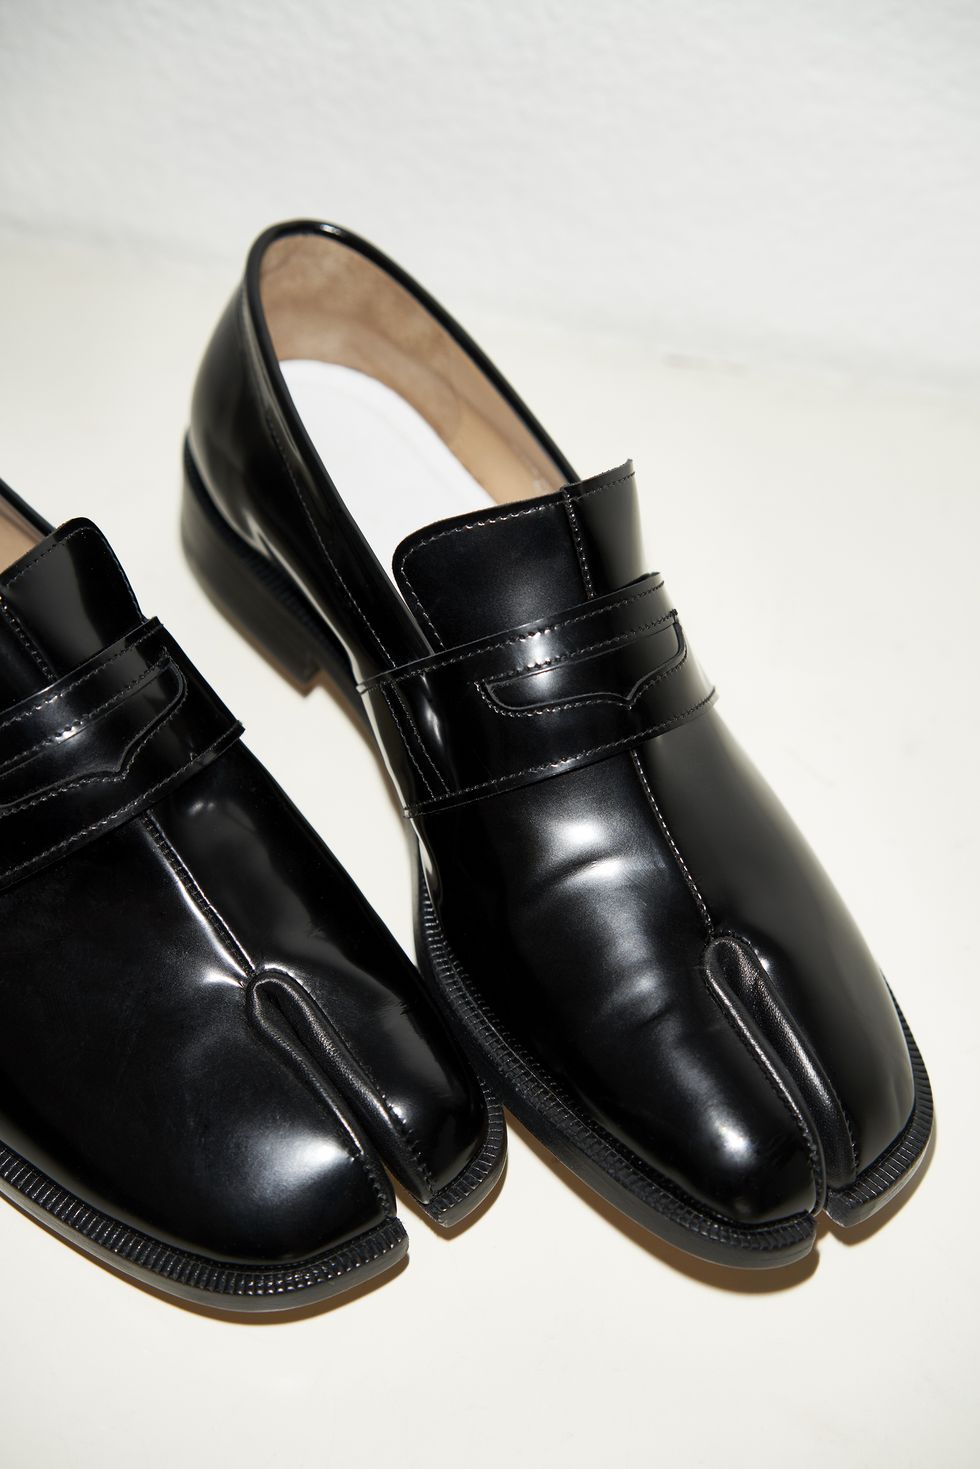 Footwear, Shoe, Black, Dress shoe, Dancing shoe, Sandal, Buckle, Leather, Oxford shoe, 